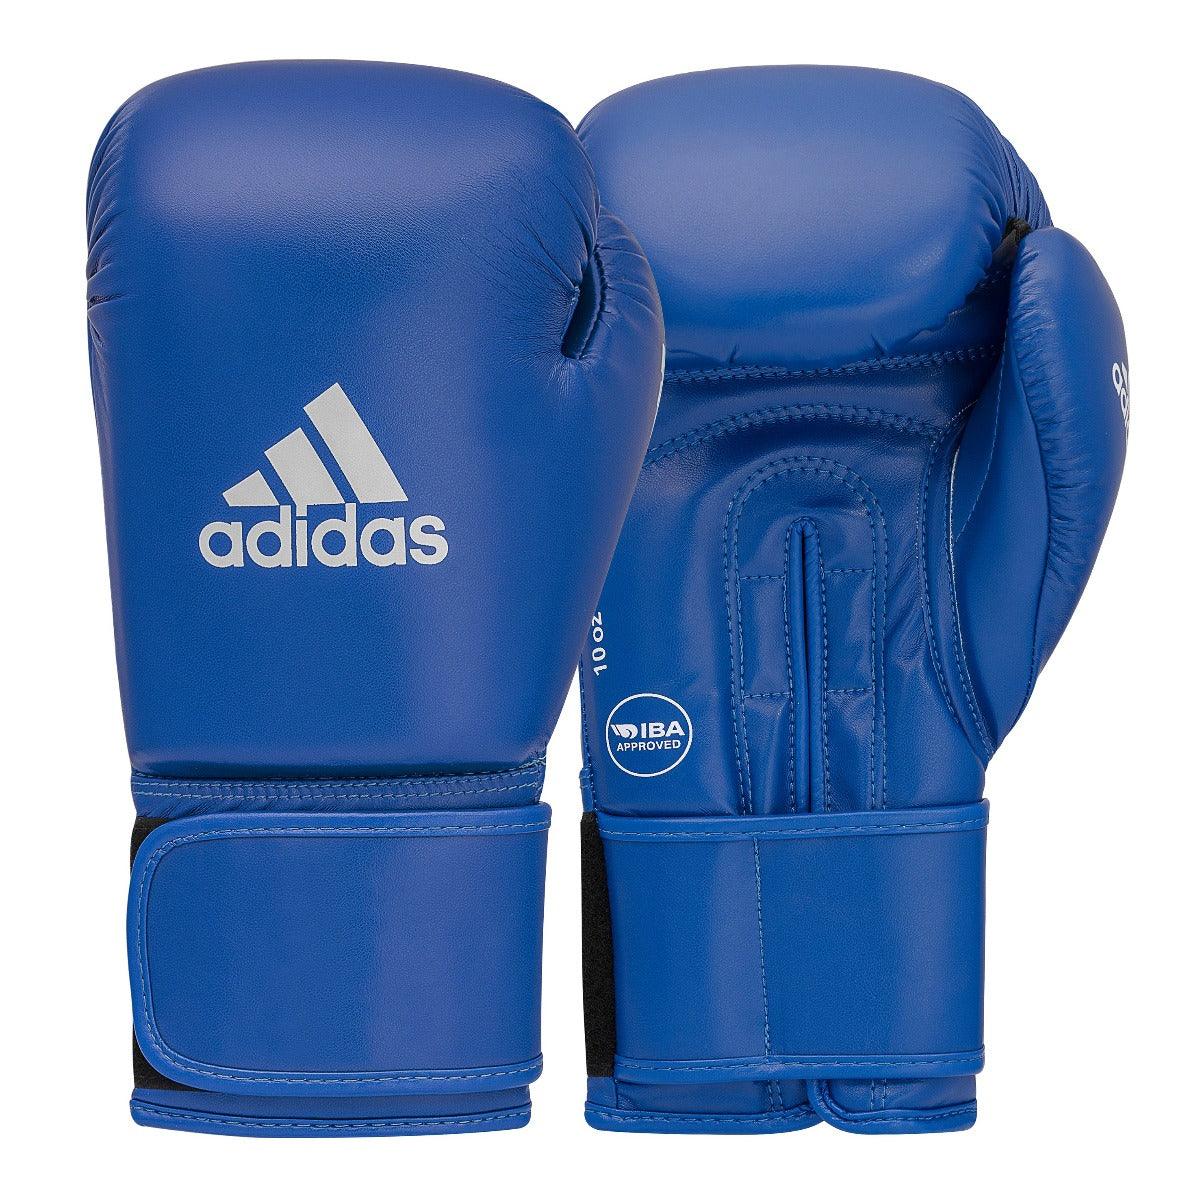 Gants de Boxe Compétition Amateur IBA Adidas bleu